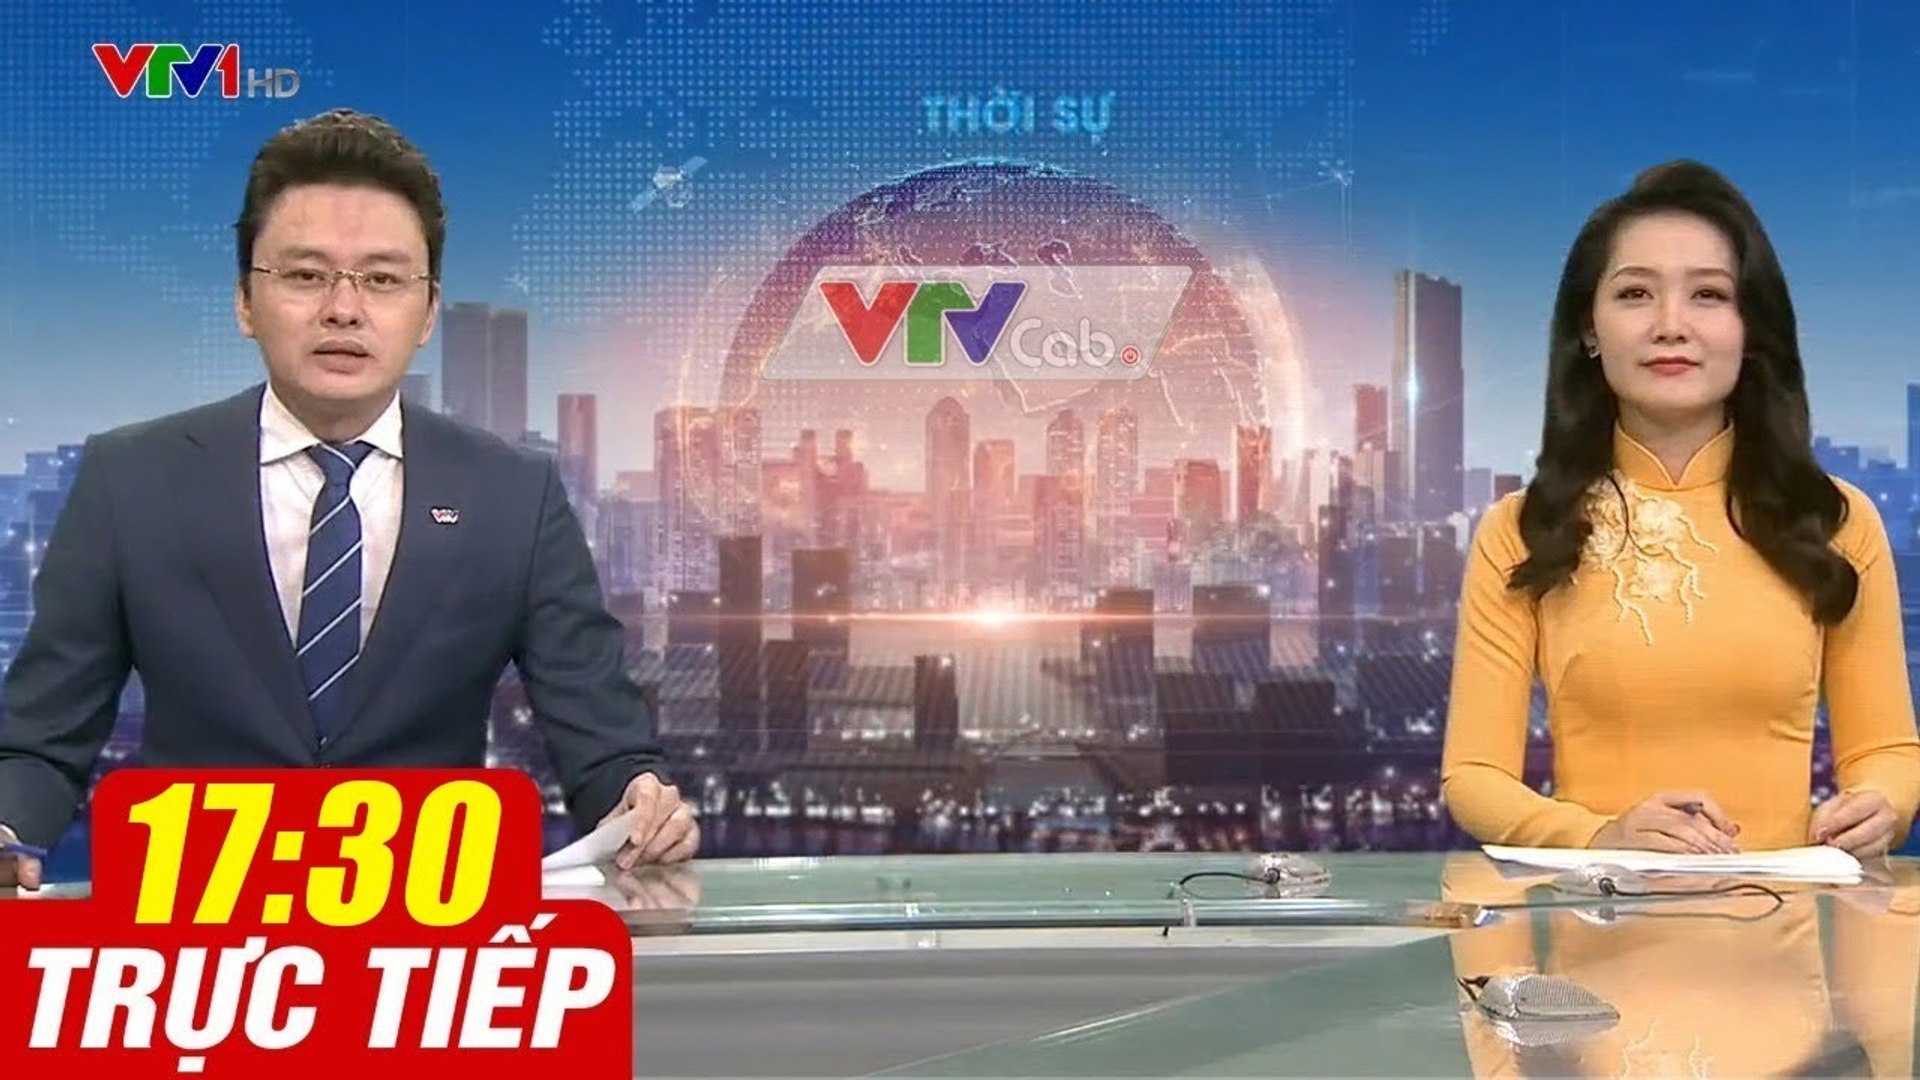 Trực Tiếp VIỆT NAM HÔM NAY 17h30 ngày 8.08.2020  Tin tức thời sự VTV1 mới nhất hôm nay